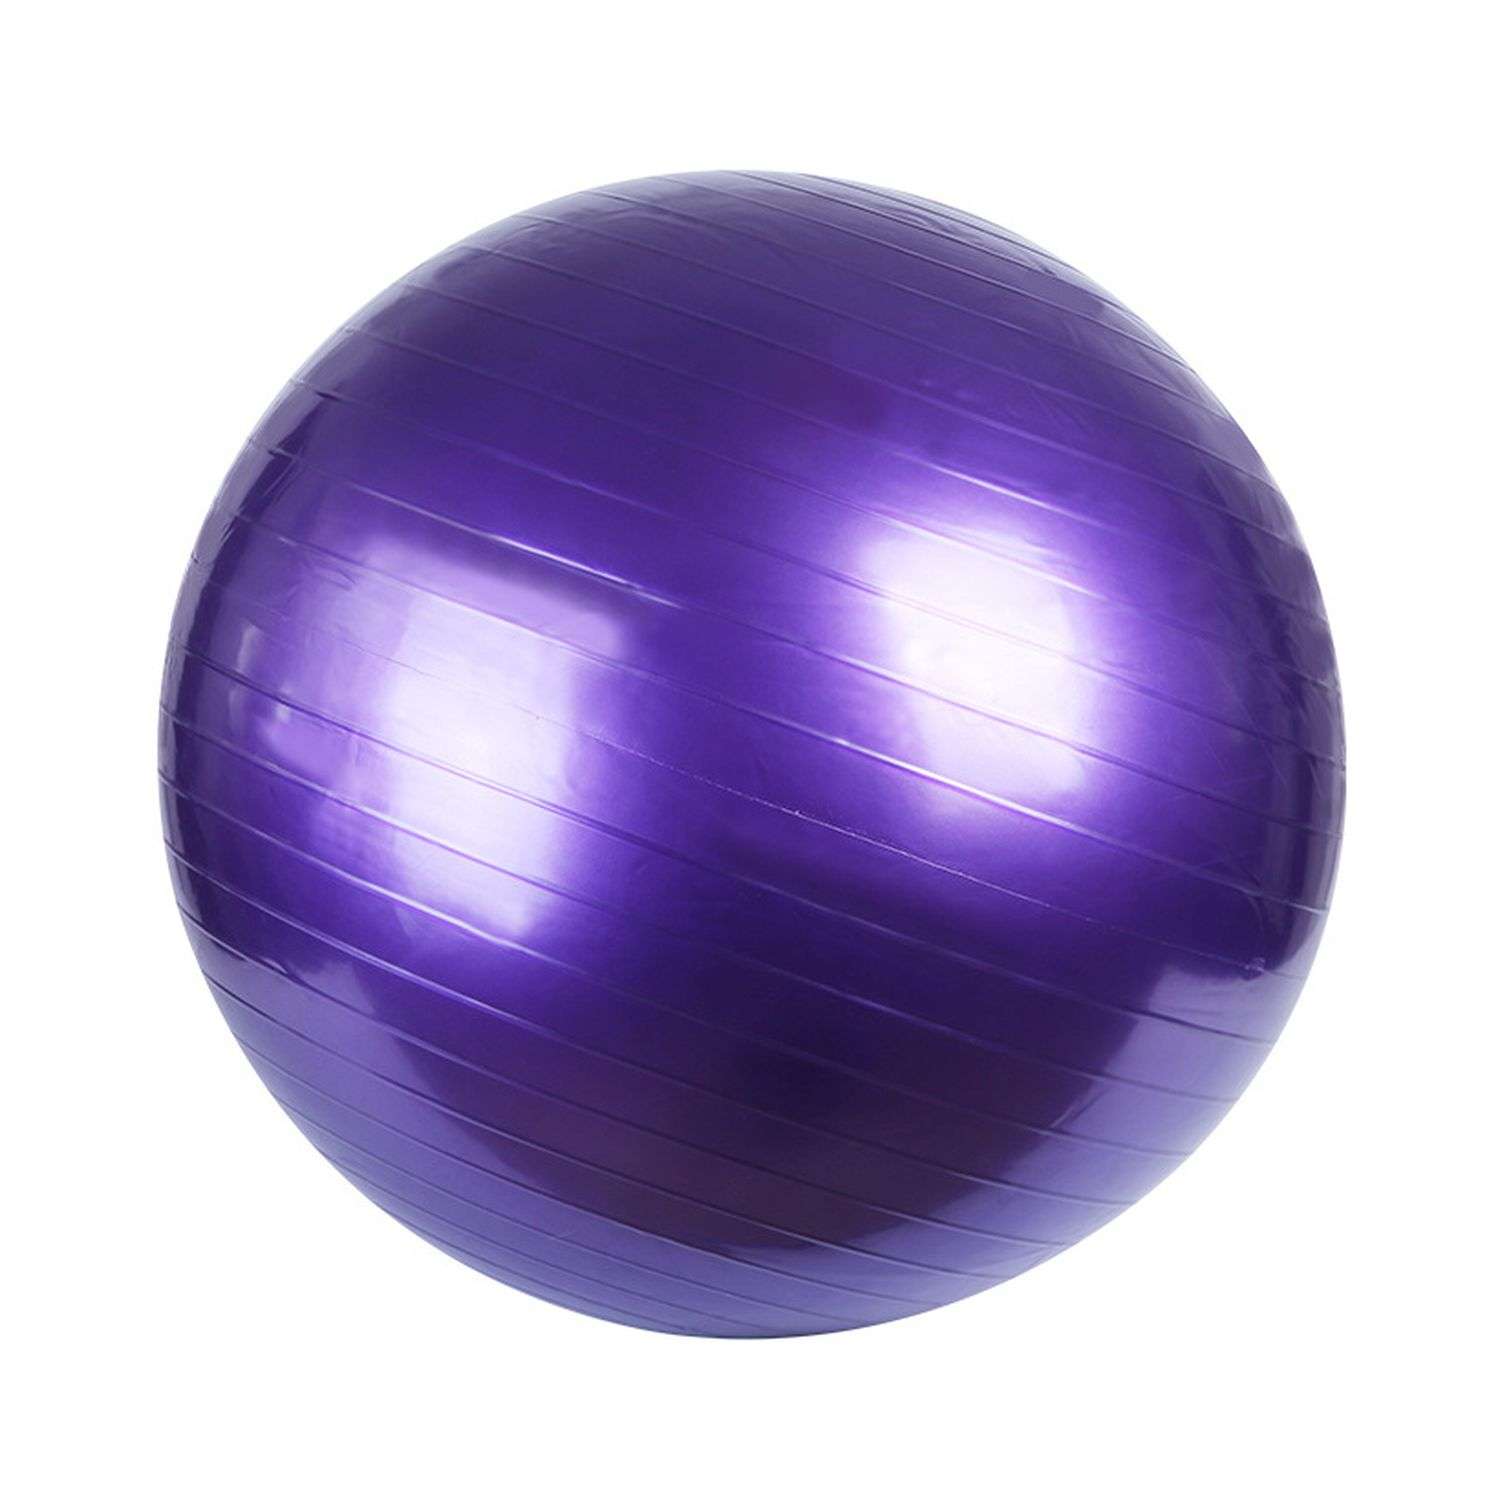 Фитбол Beroma с антивзрывным эффектом 75 см фиолетовый - фото 1